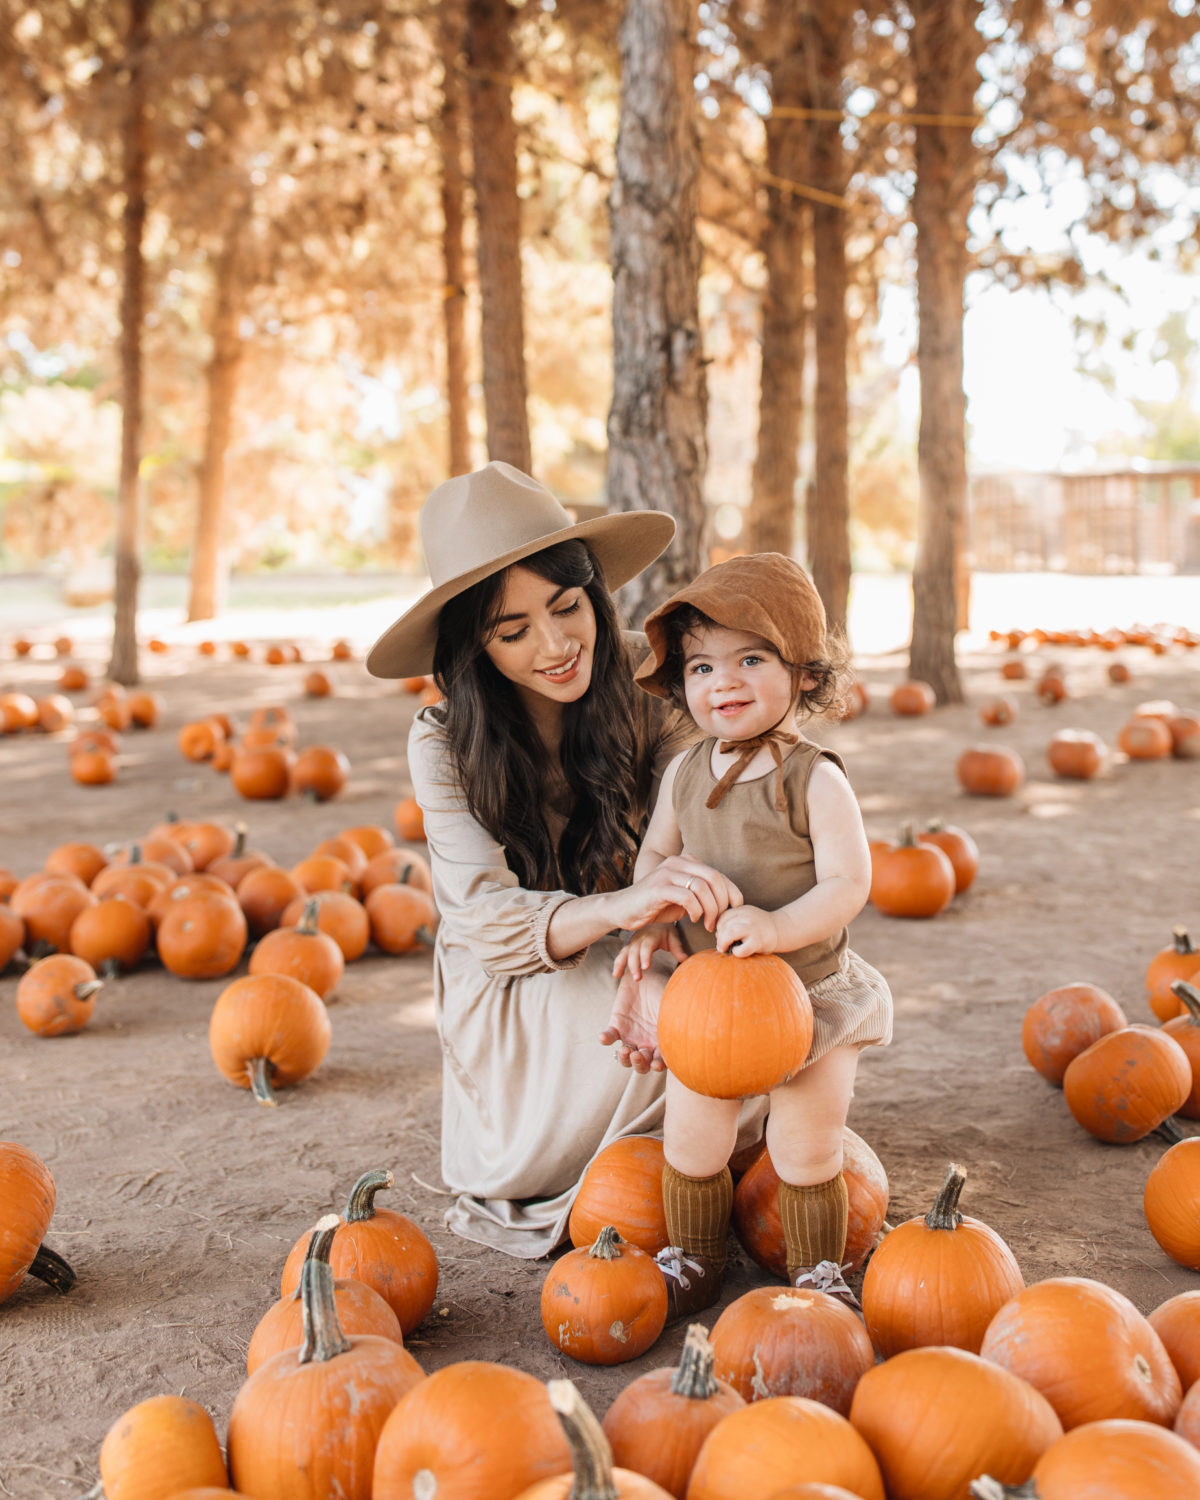 Autumn Traditions: Our Annual Trip to the Pumpkin Farm